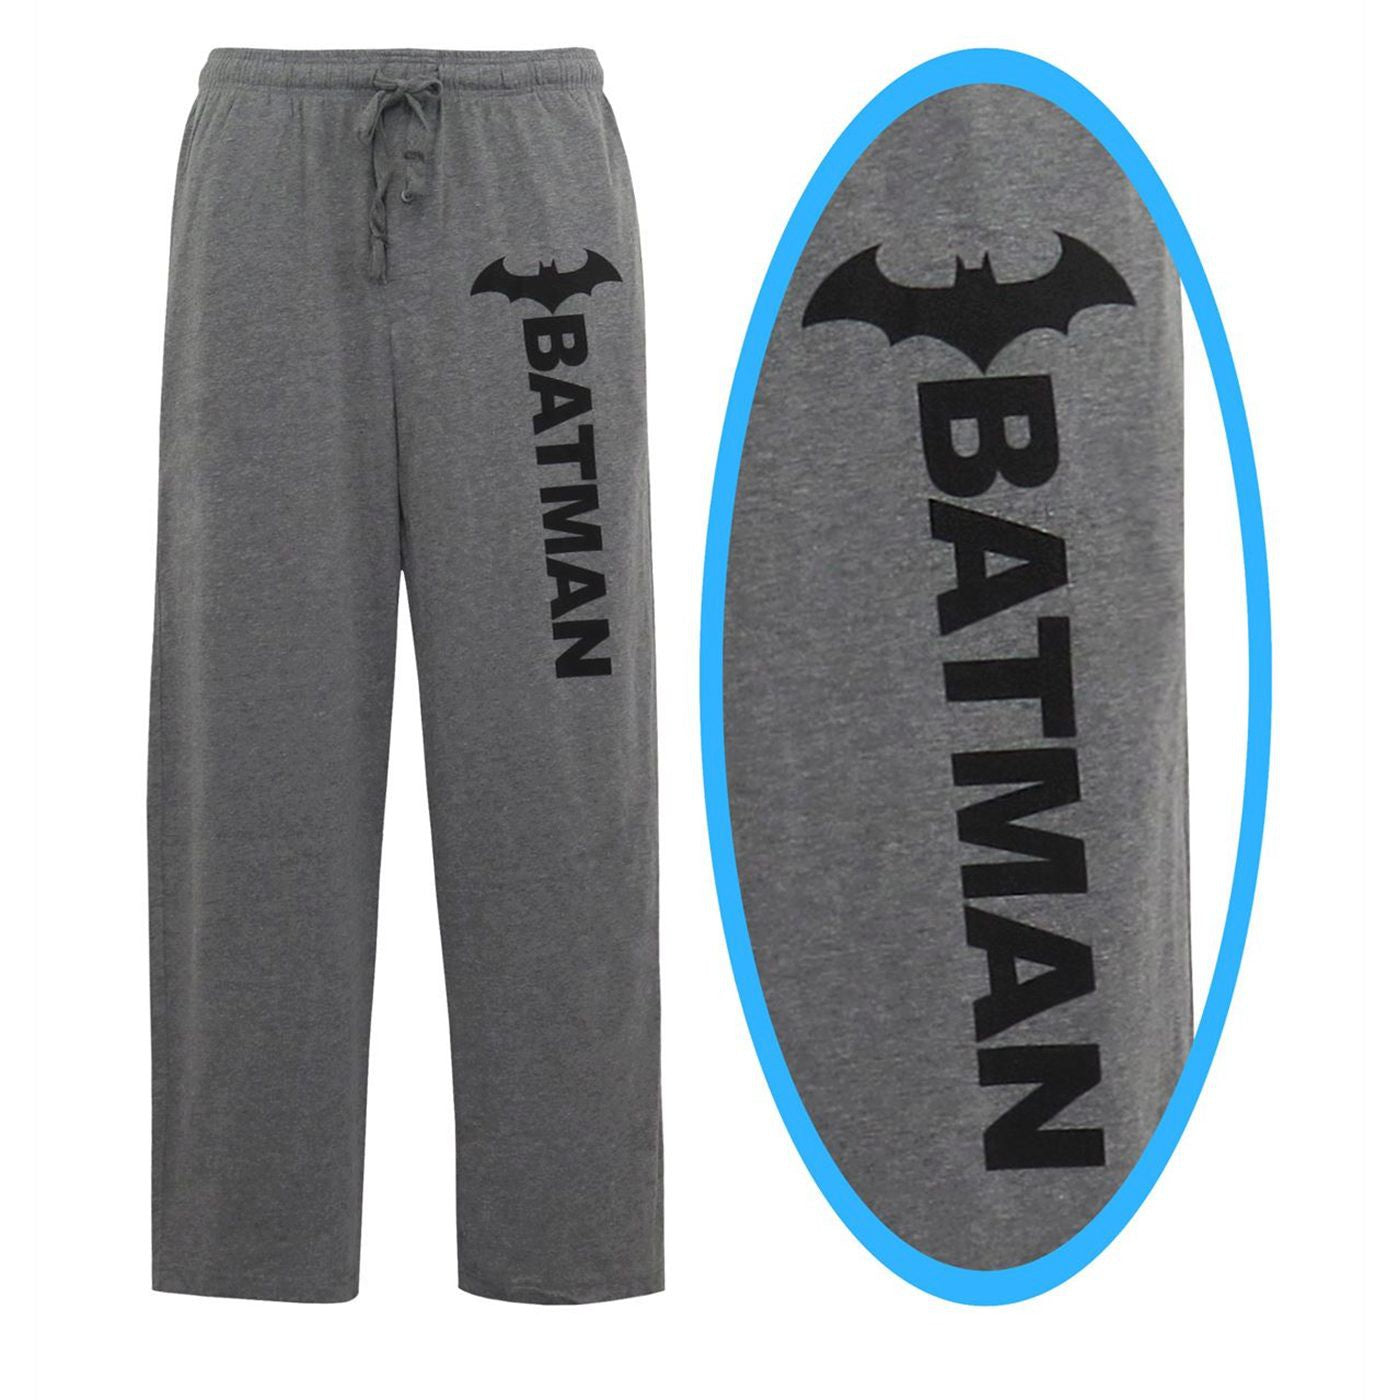 Mens Batman Pajama Pants : Target